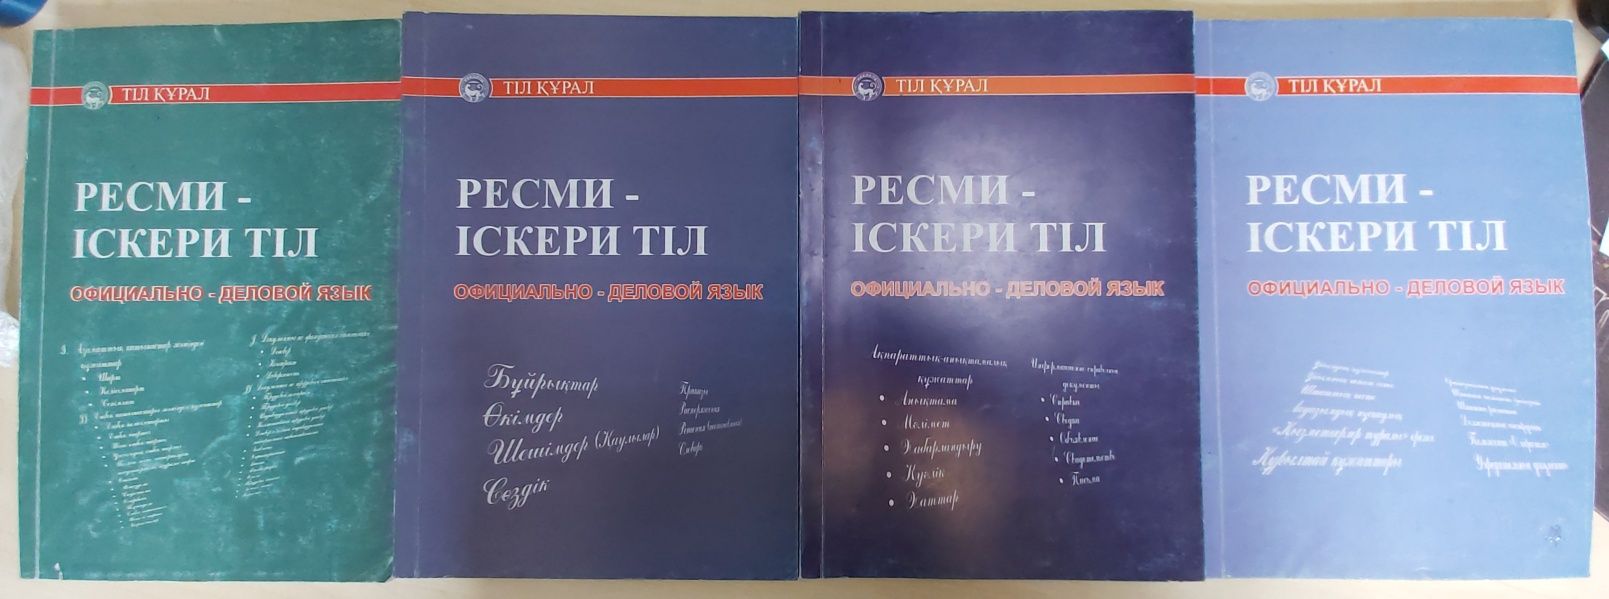 Учебники по официально-деловому казахскому языку в 4 томах, в отличном